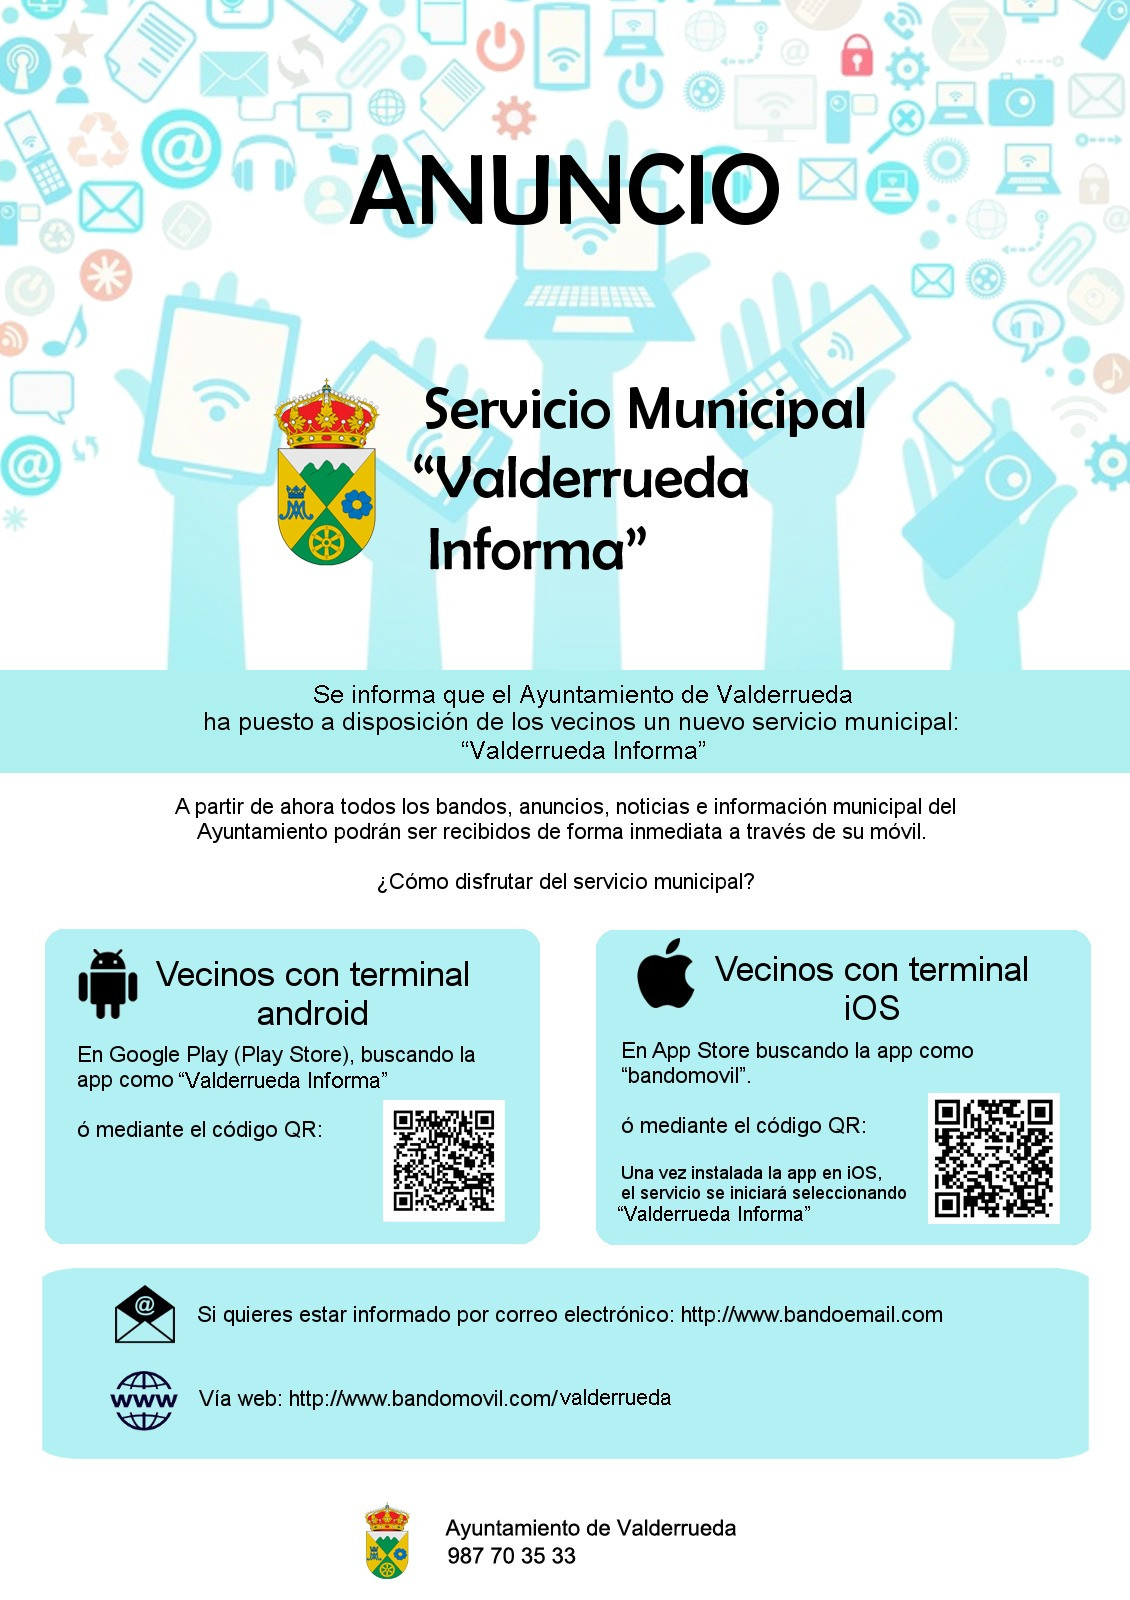 Valderrueda informa app